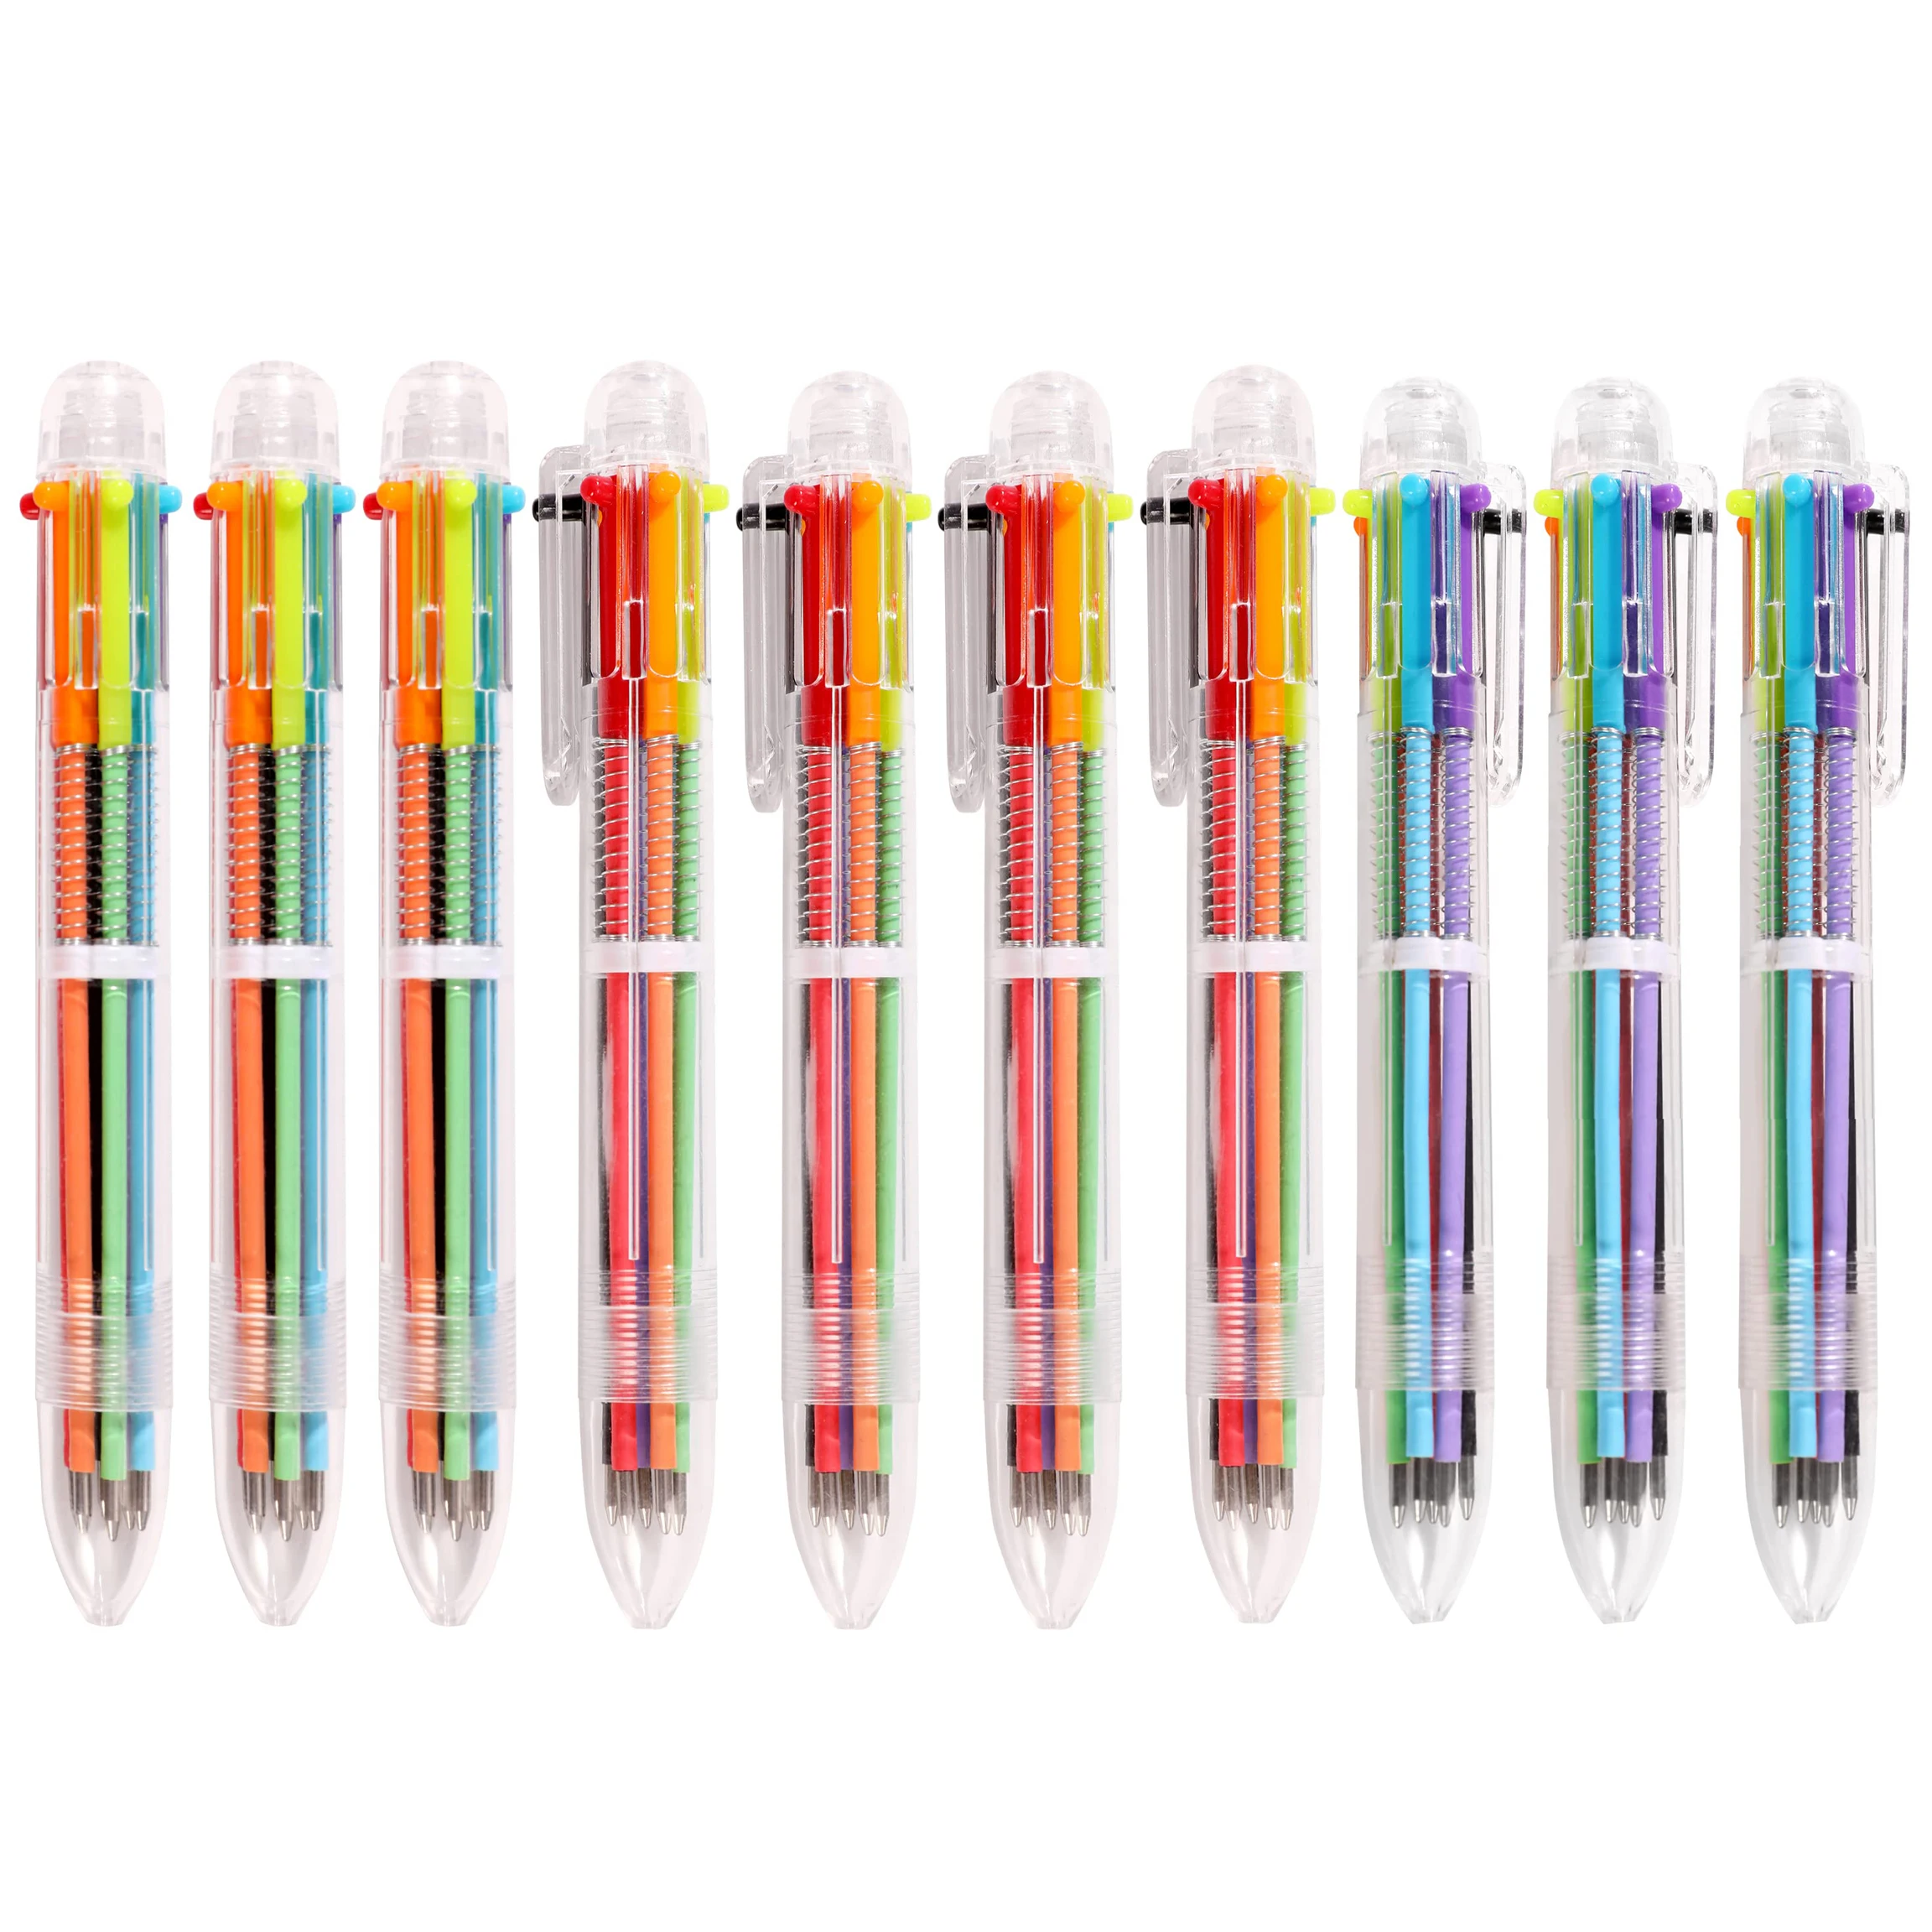 10шт Канцелярских принадлежностей 6-Цветная Шариковая Ручка Прозрачная Полоска Многофункциональная Масляная ручка Rainbow Pen Школа письма